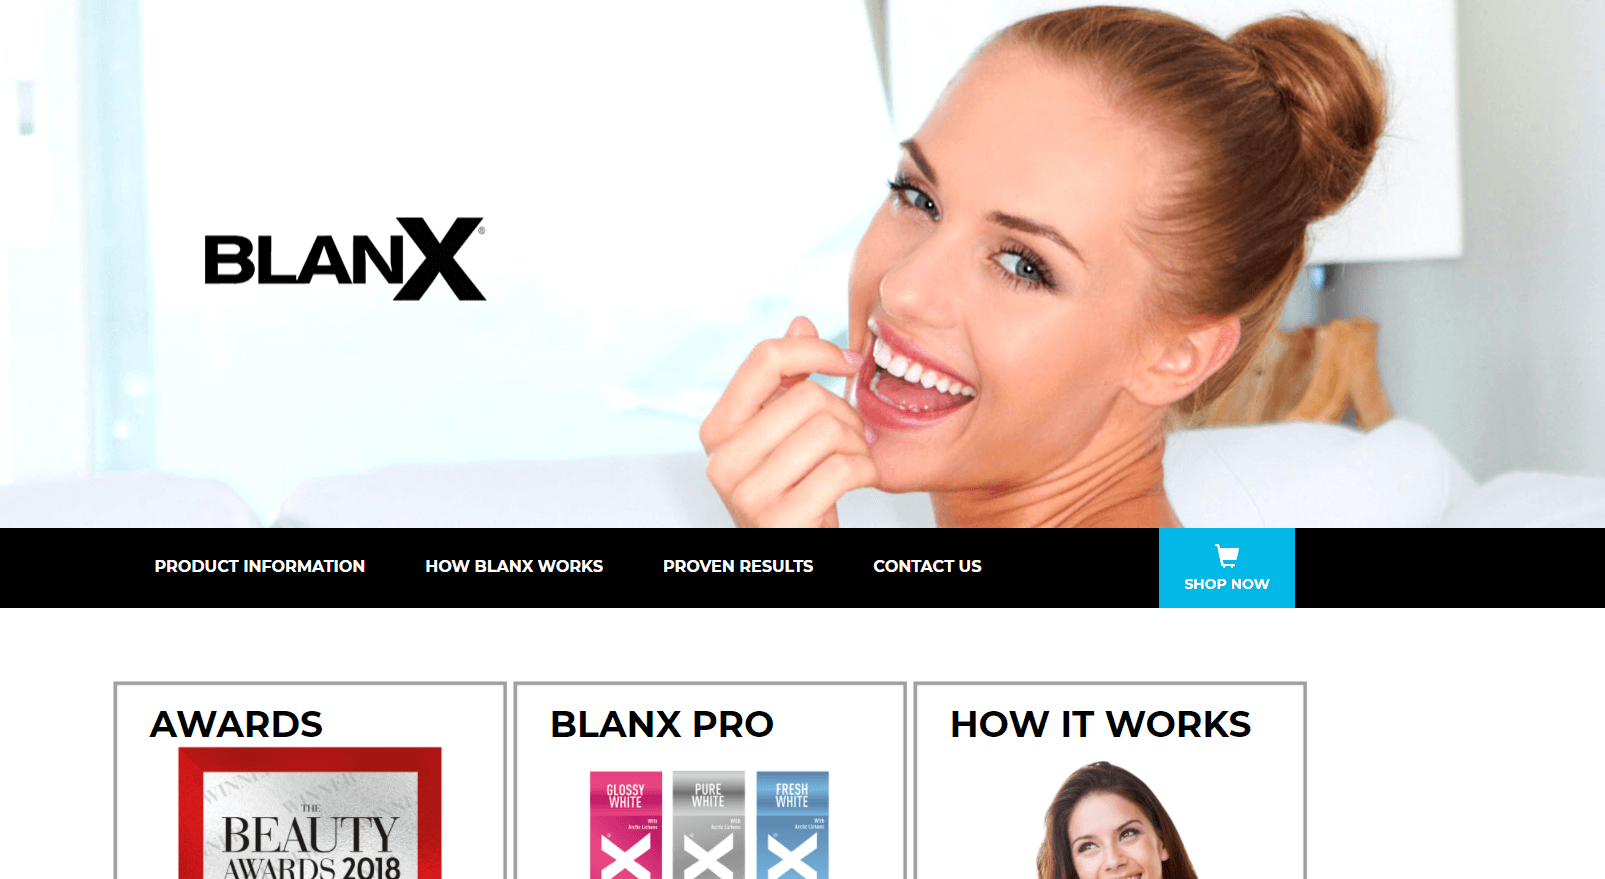 Blanx官网 倍林斯意大利高端牙膏品牌